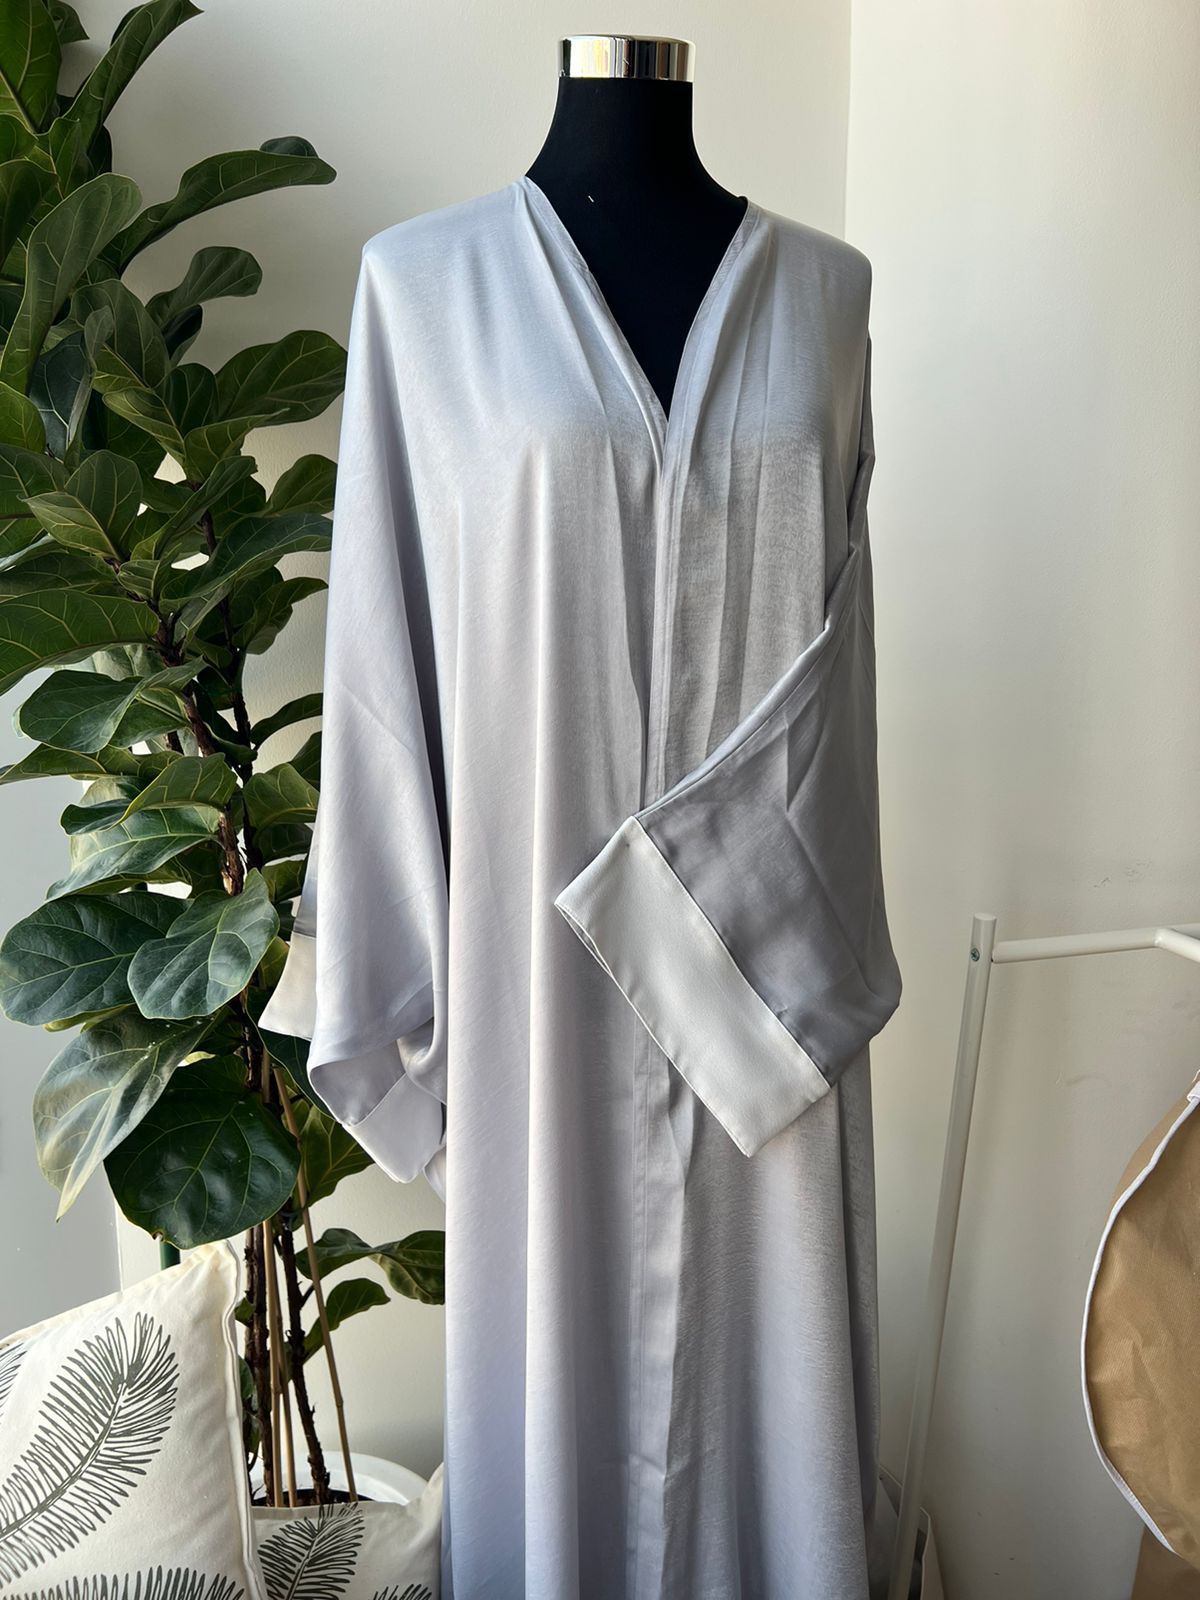 Shimmery Abaya with White Sleeve Fold